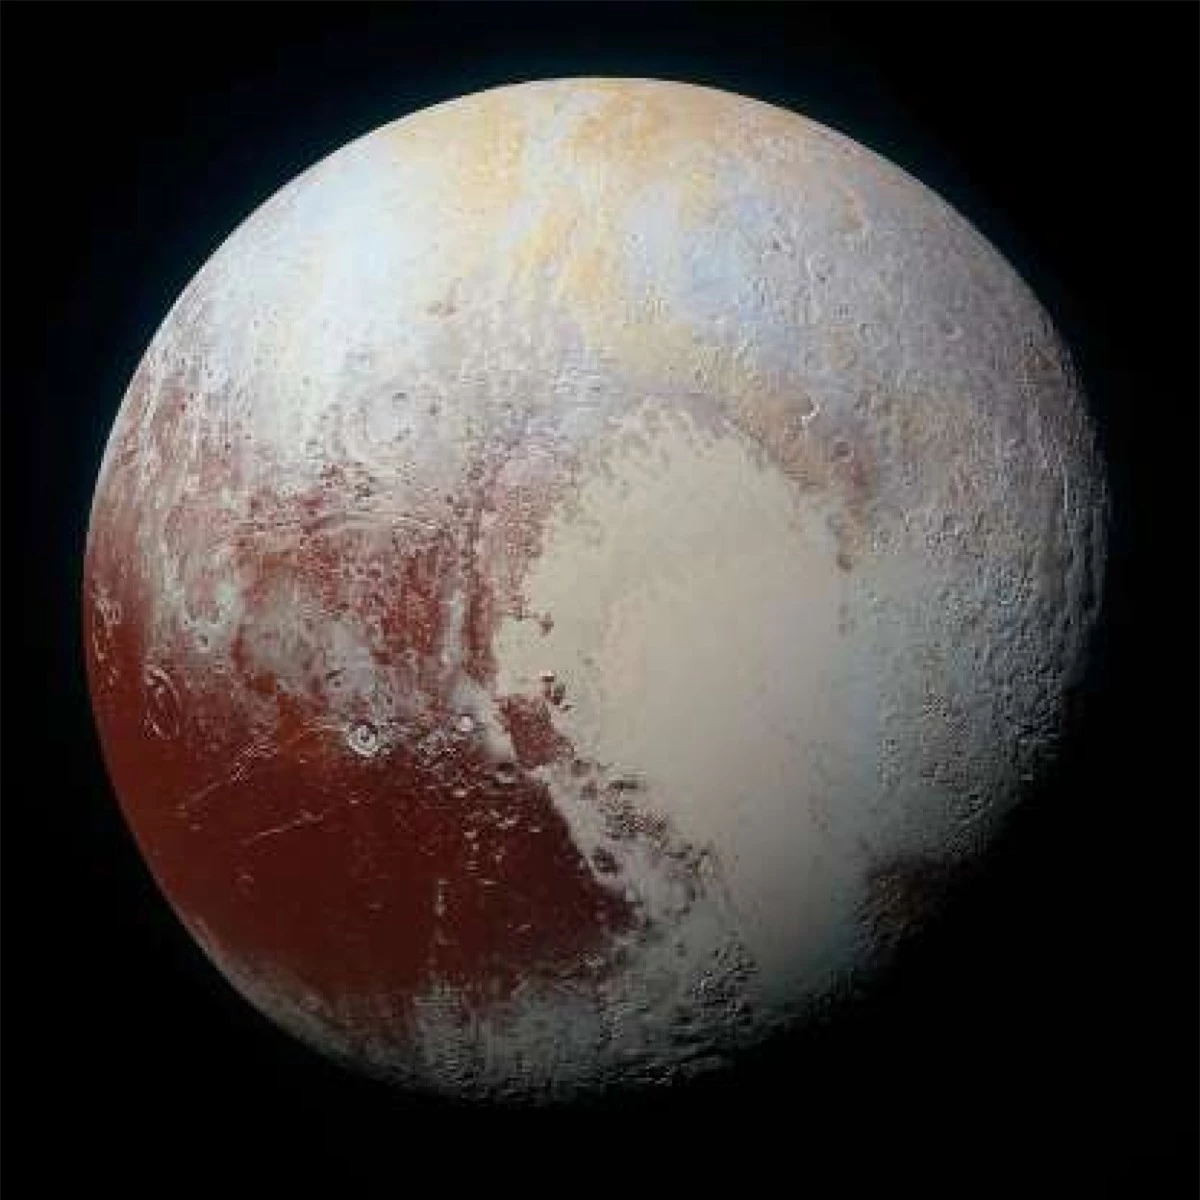 Sao Diêm vương từng được coi là hành tinh thứ 9 trong Hệ Mặt trời nhưng năm 2006 đã bị "giáng cấp" xuống chỉ còn là một "hành tinh lùn". Dù thay đổi tình trạng liên tục nhưng một điều không thể phủ nhận là vẻ đẹp ngoạn mục của Sao Diêm Vương qua bức ảnh được chụp từ tàu thăm dò New Horizons của NASA.